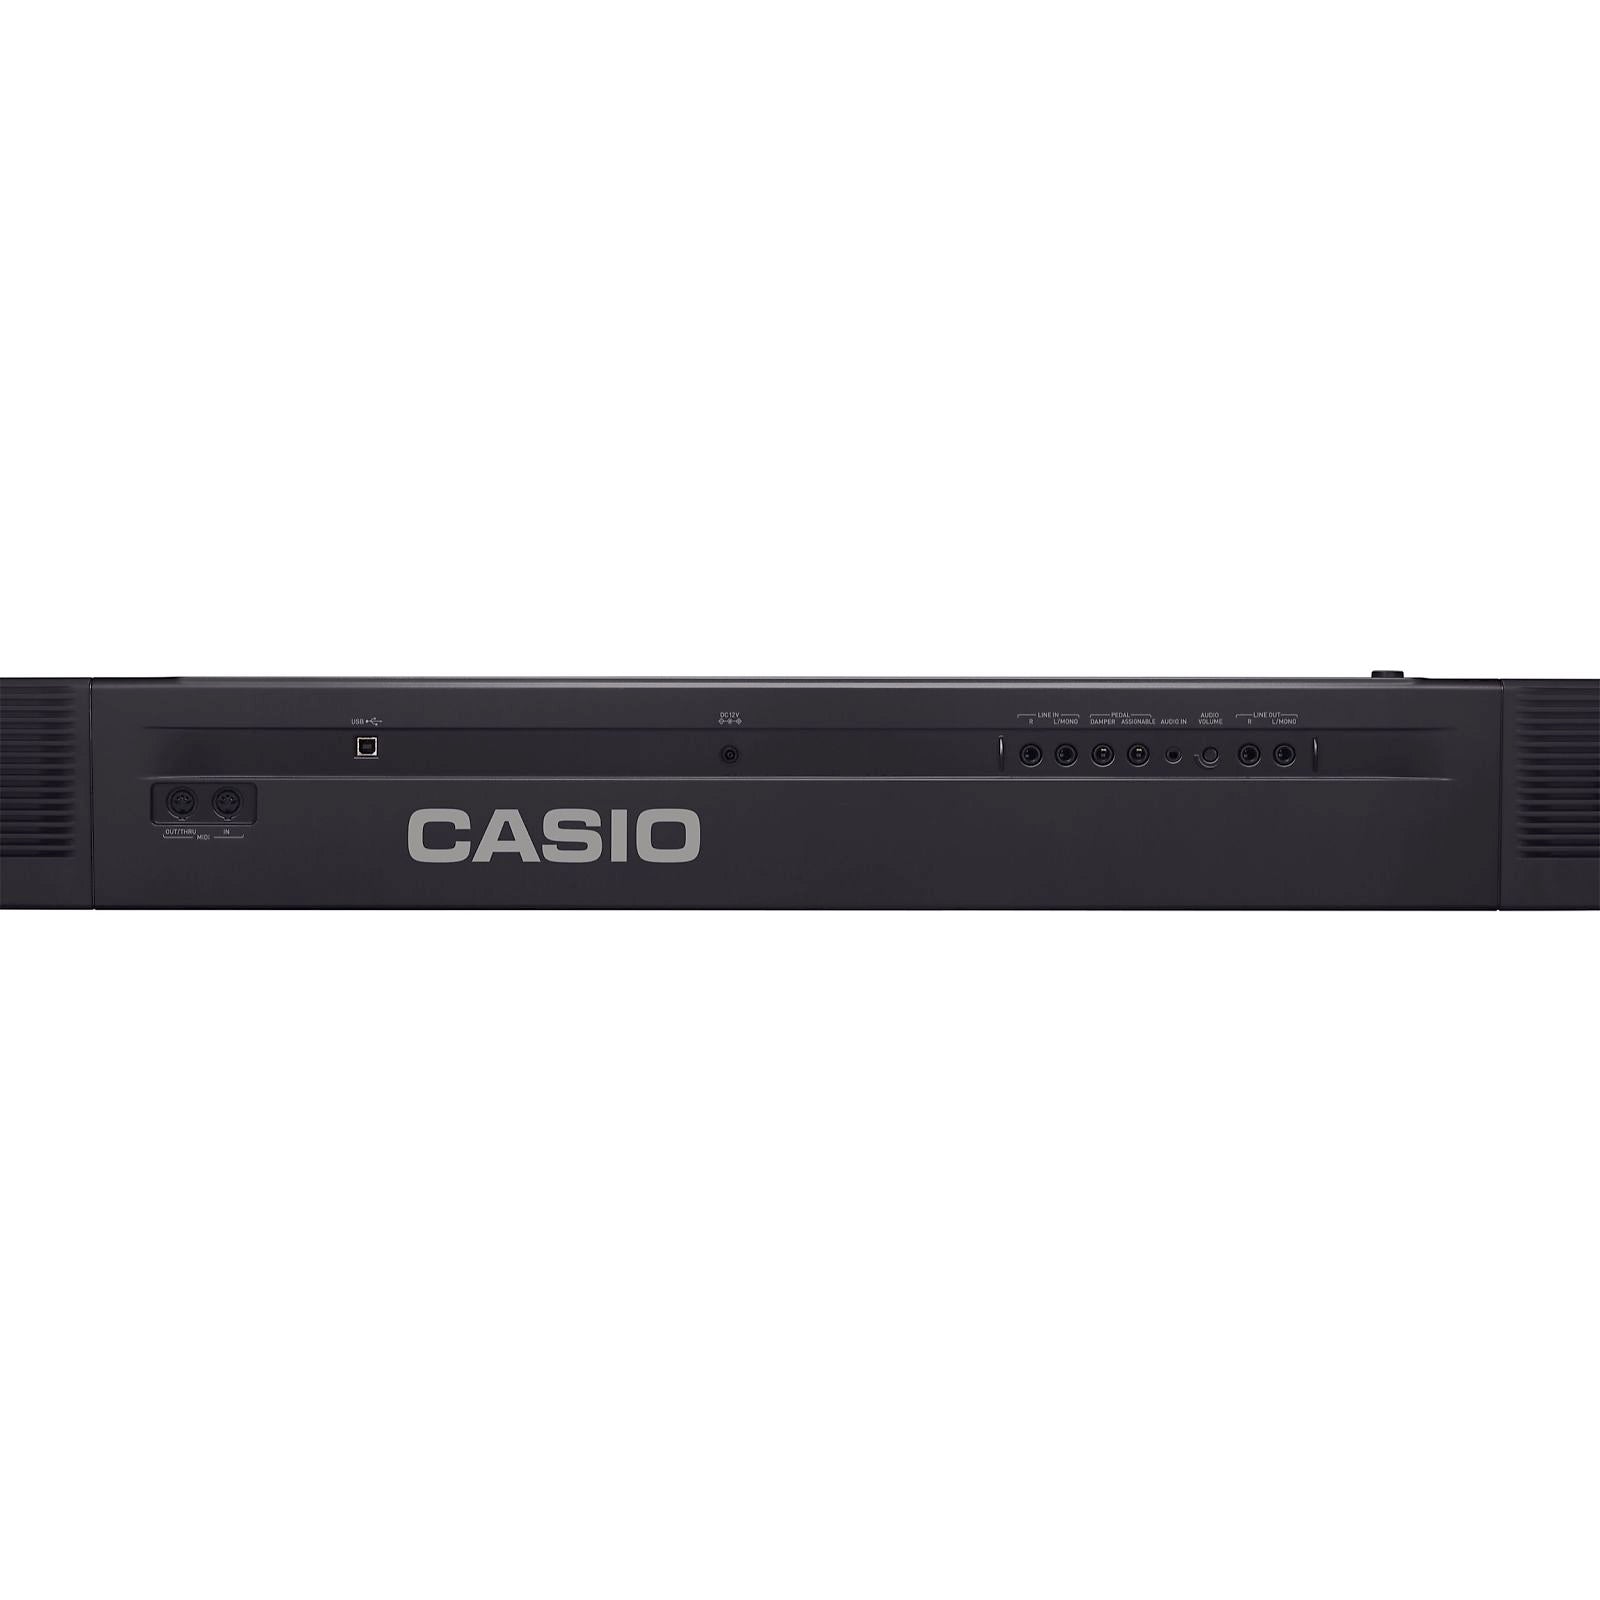 Casio PX-360 Privia Digital Piano, Black